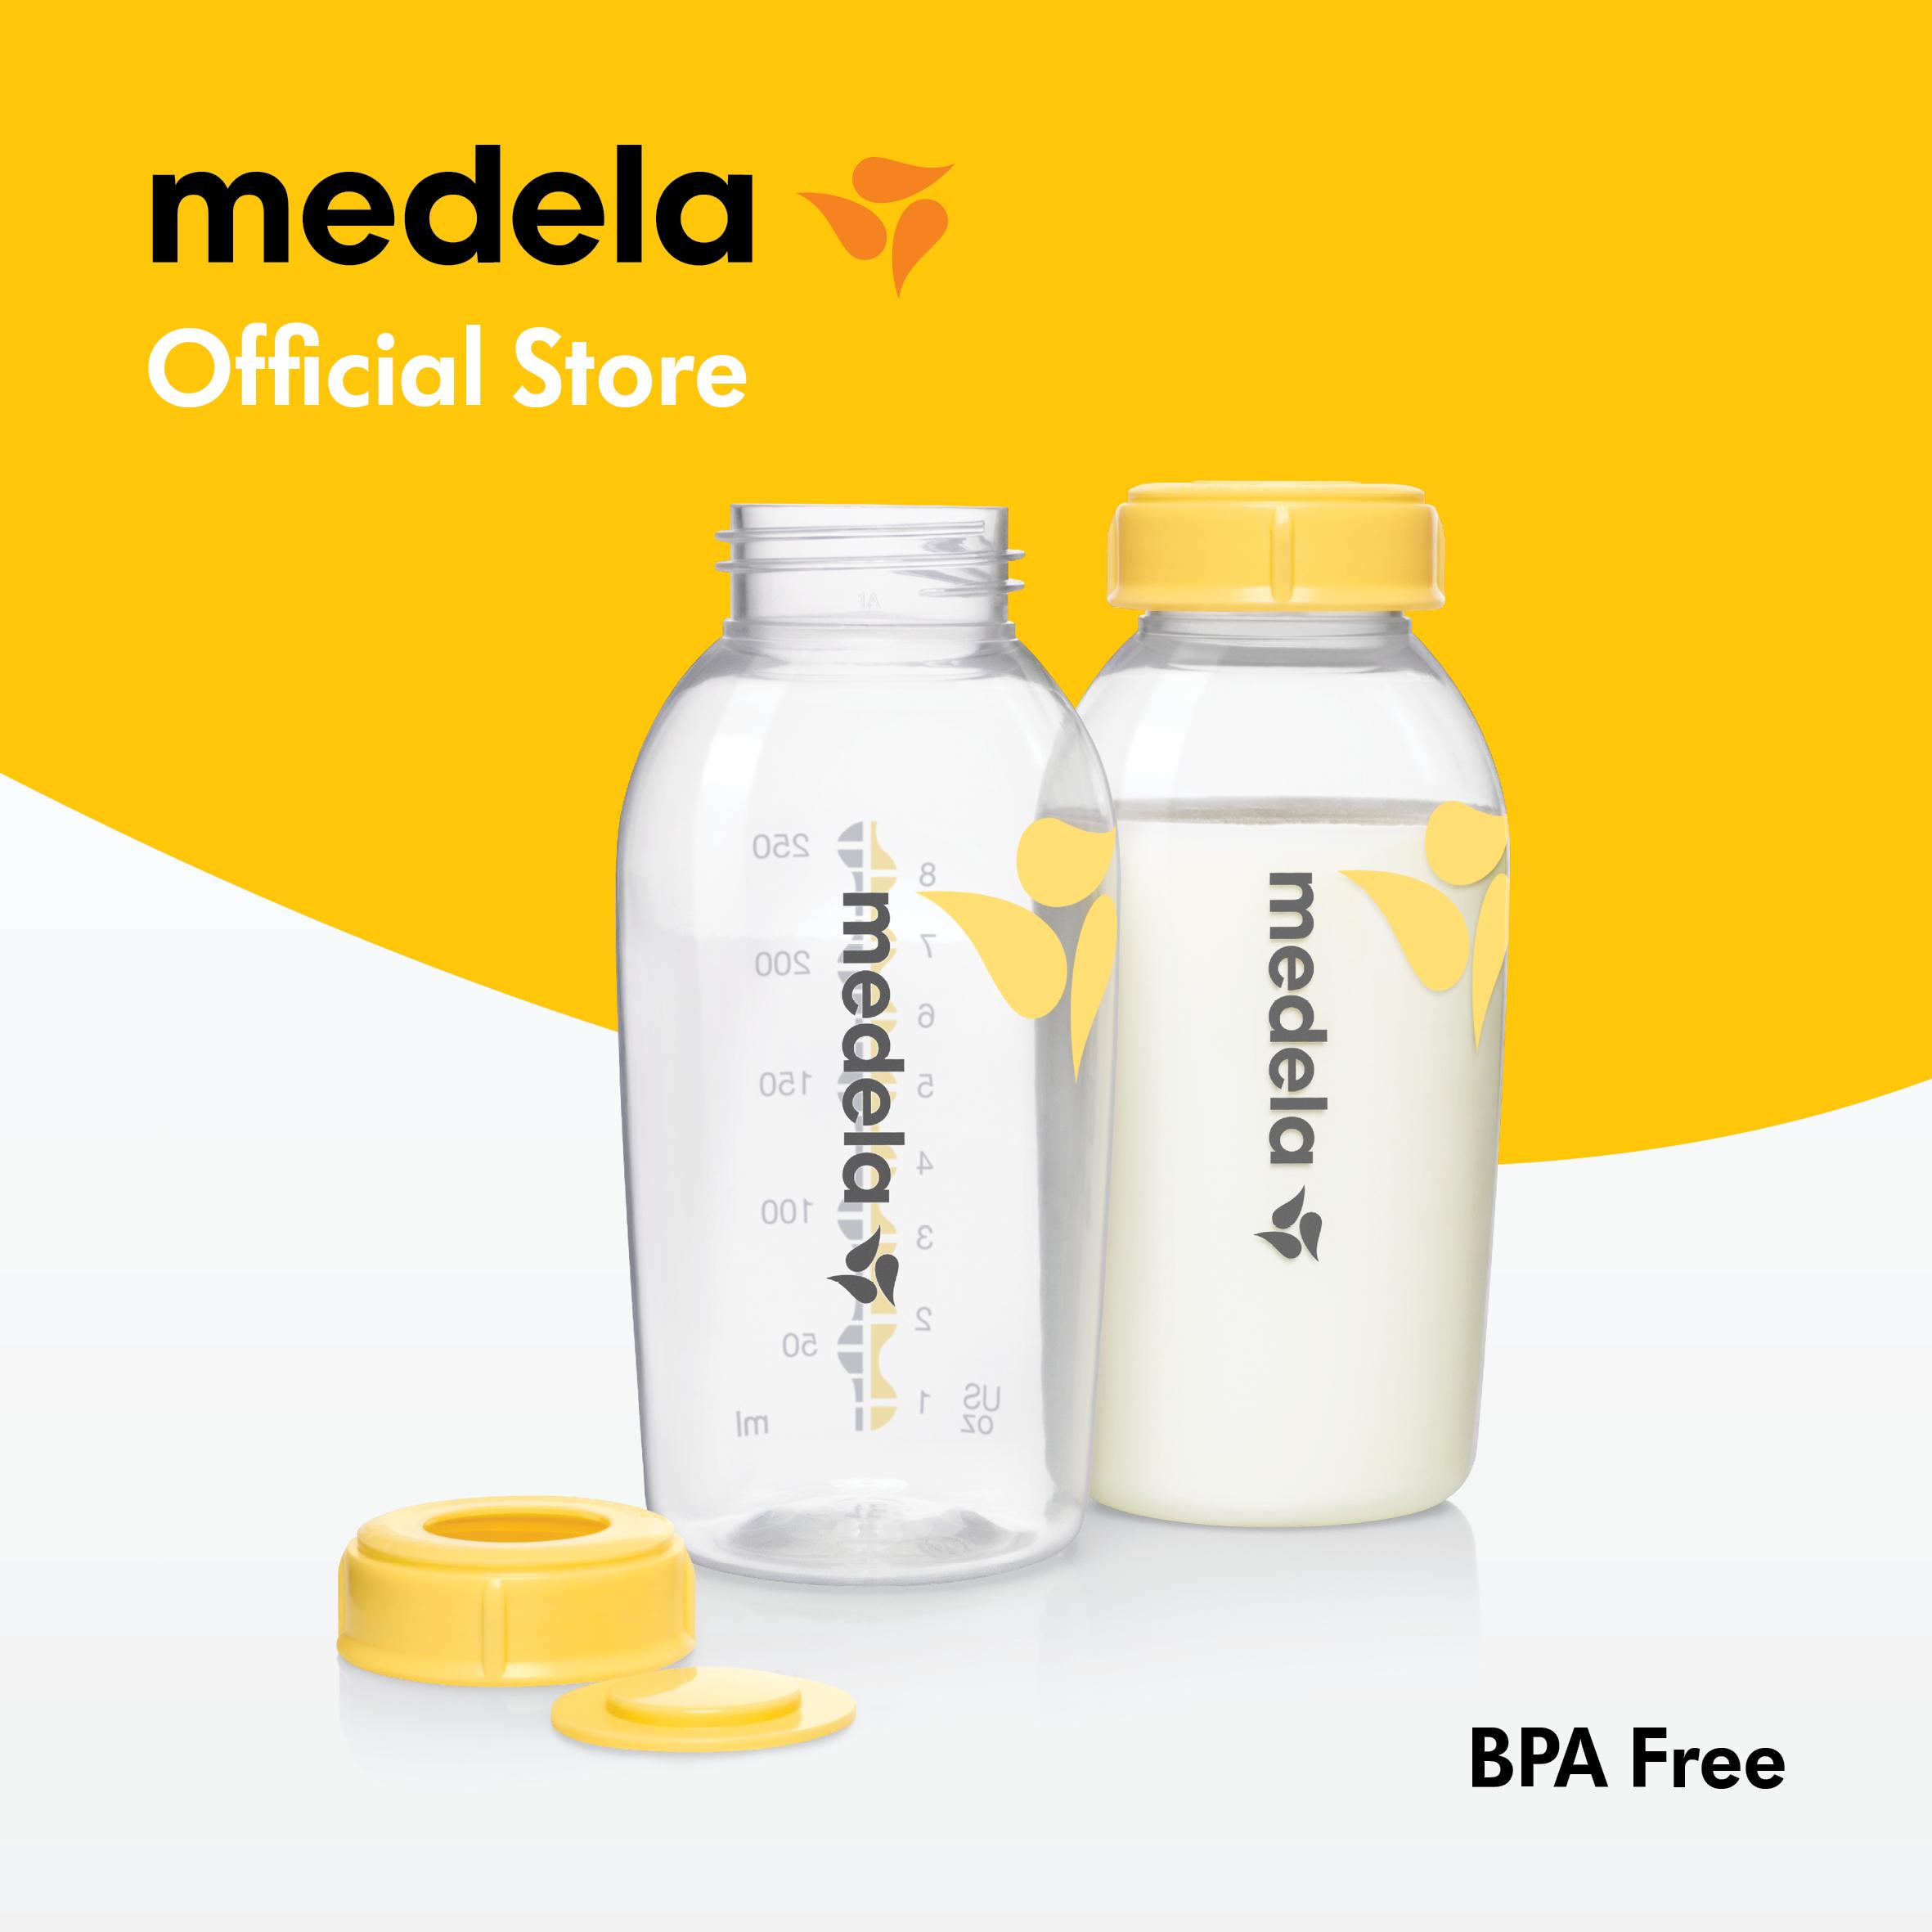 Buy Medela Bottles Online | lazada.sg